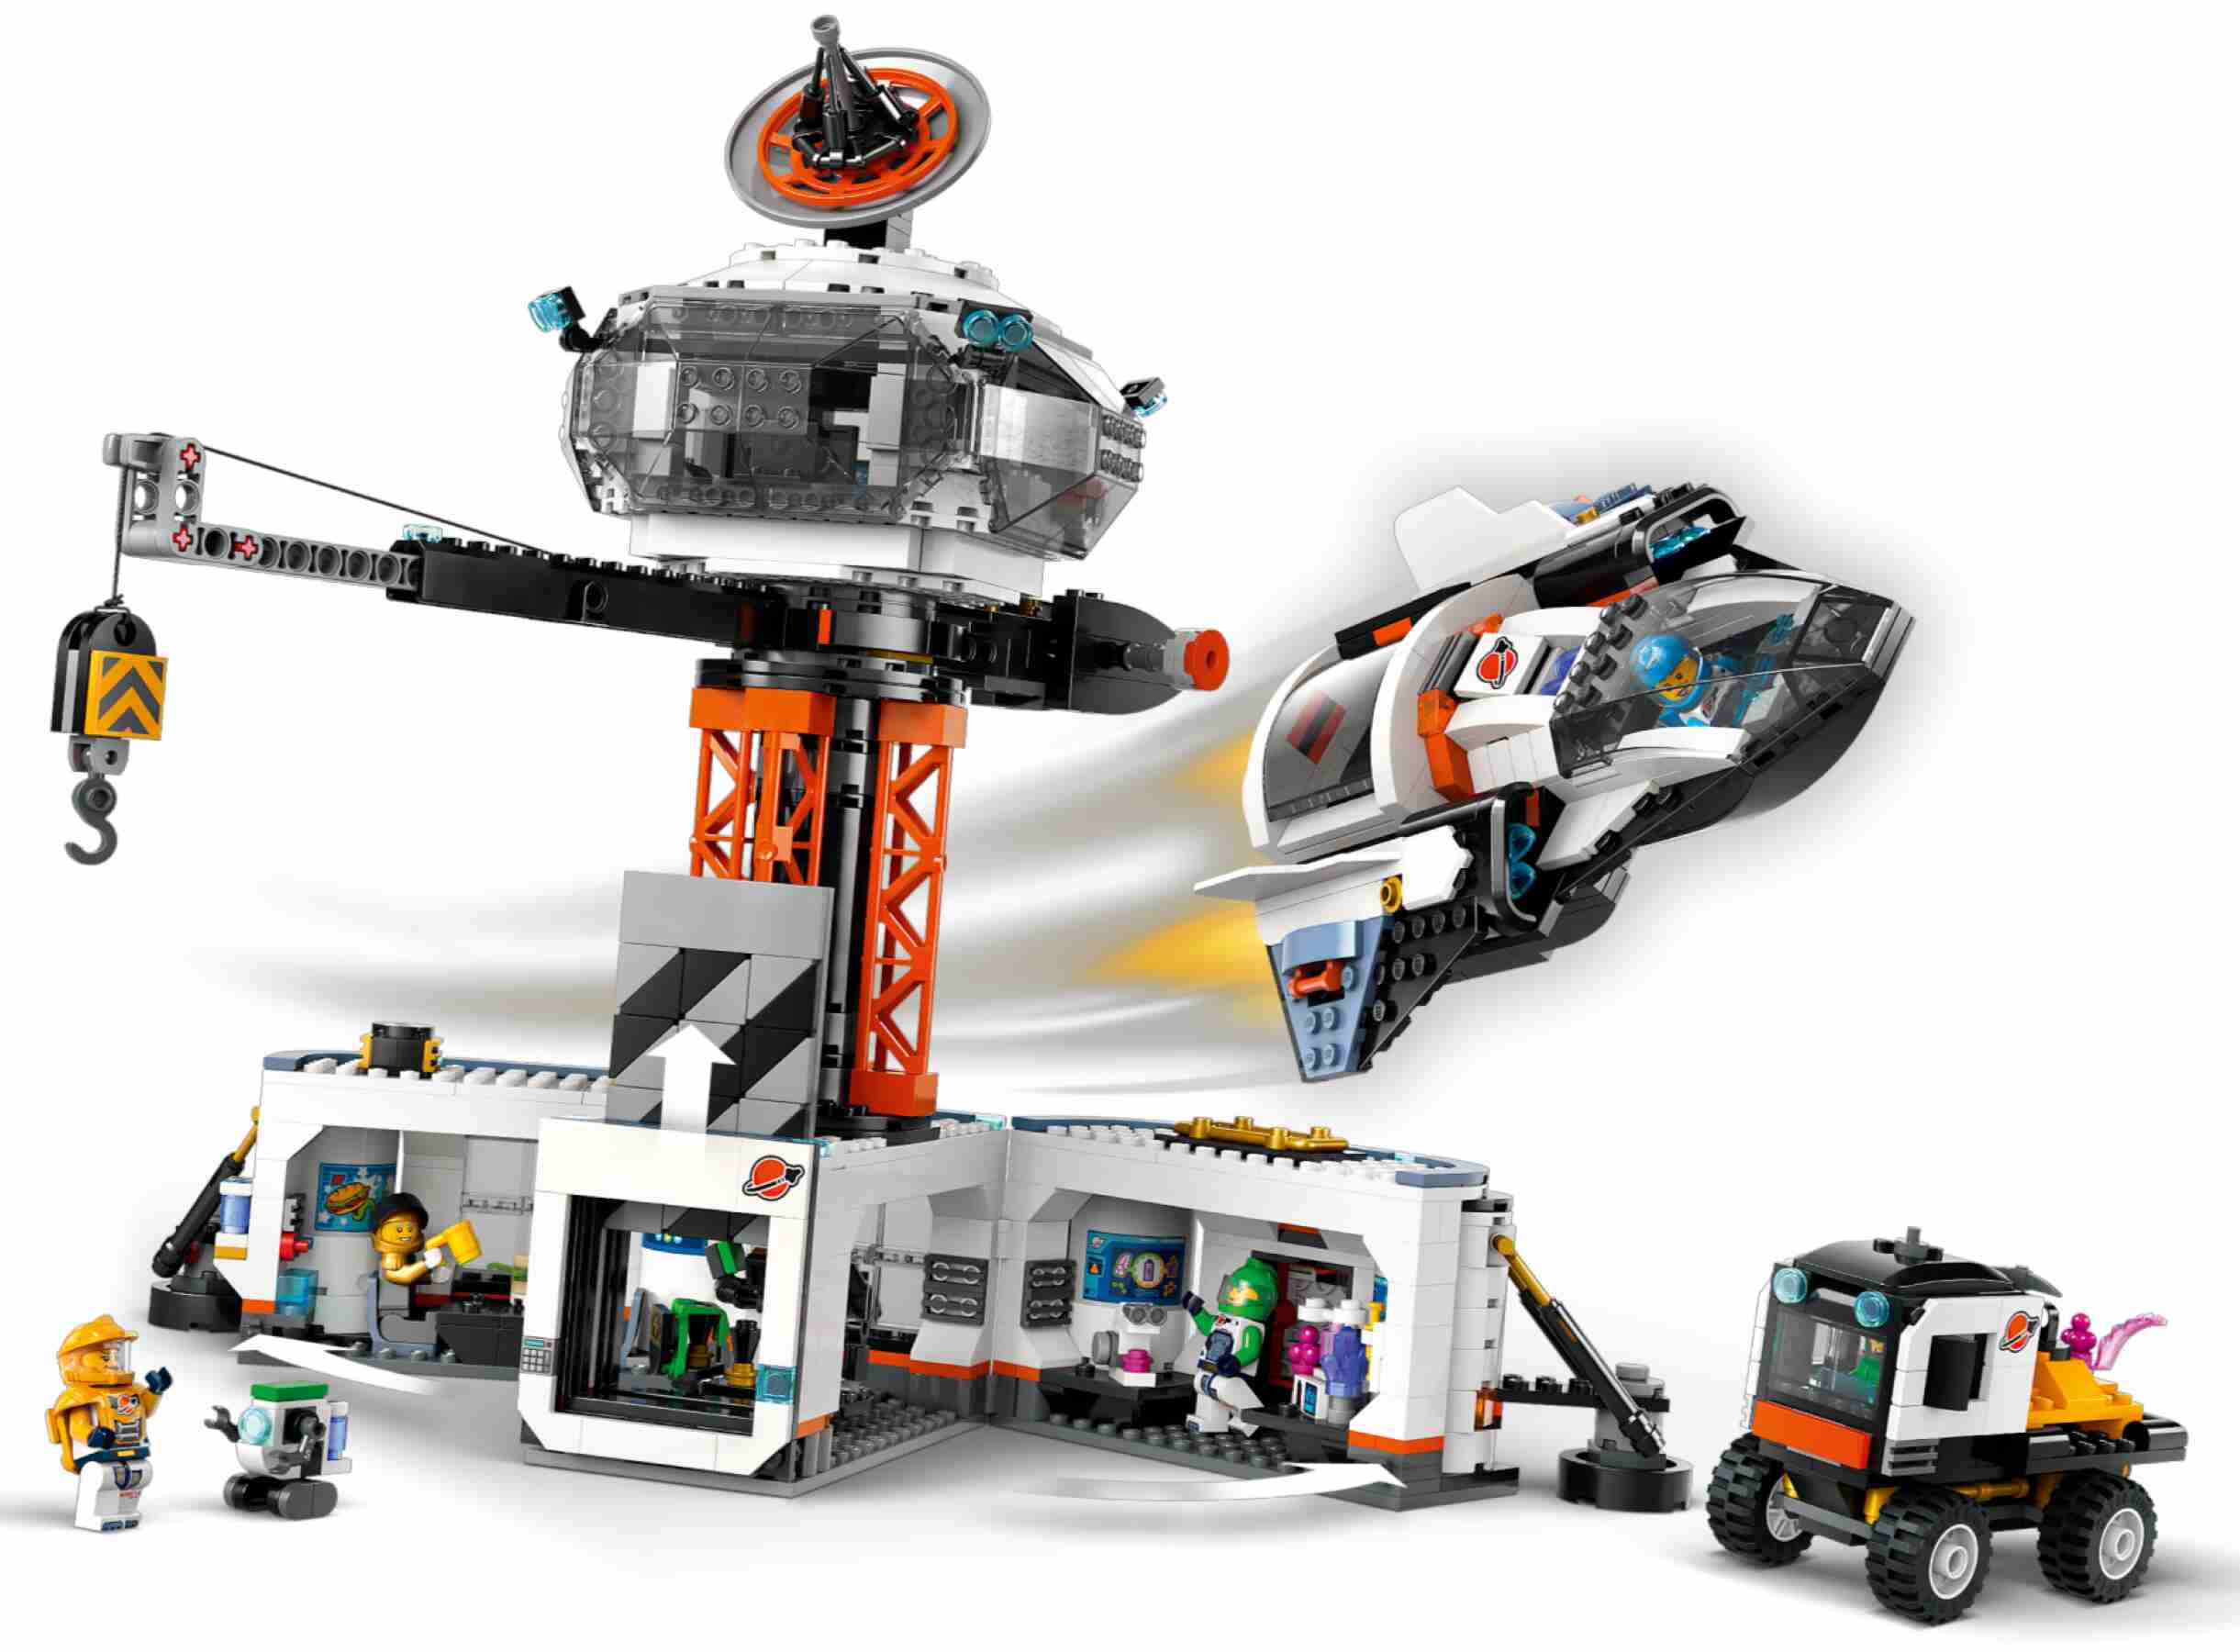 LEGO 60434 City Raumbasis mit Startrampe, 6 Minifiguren, Roboter und 2 Aliens